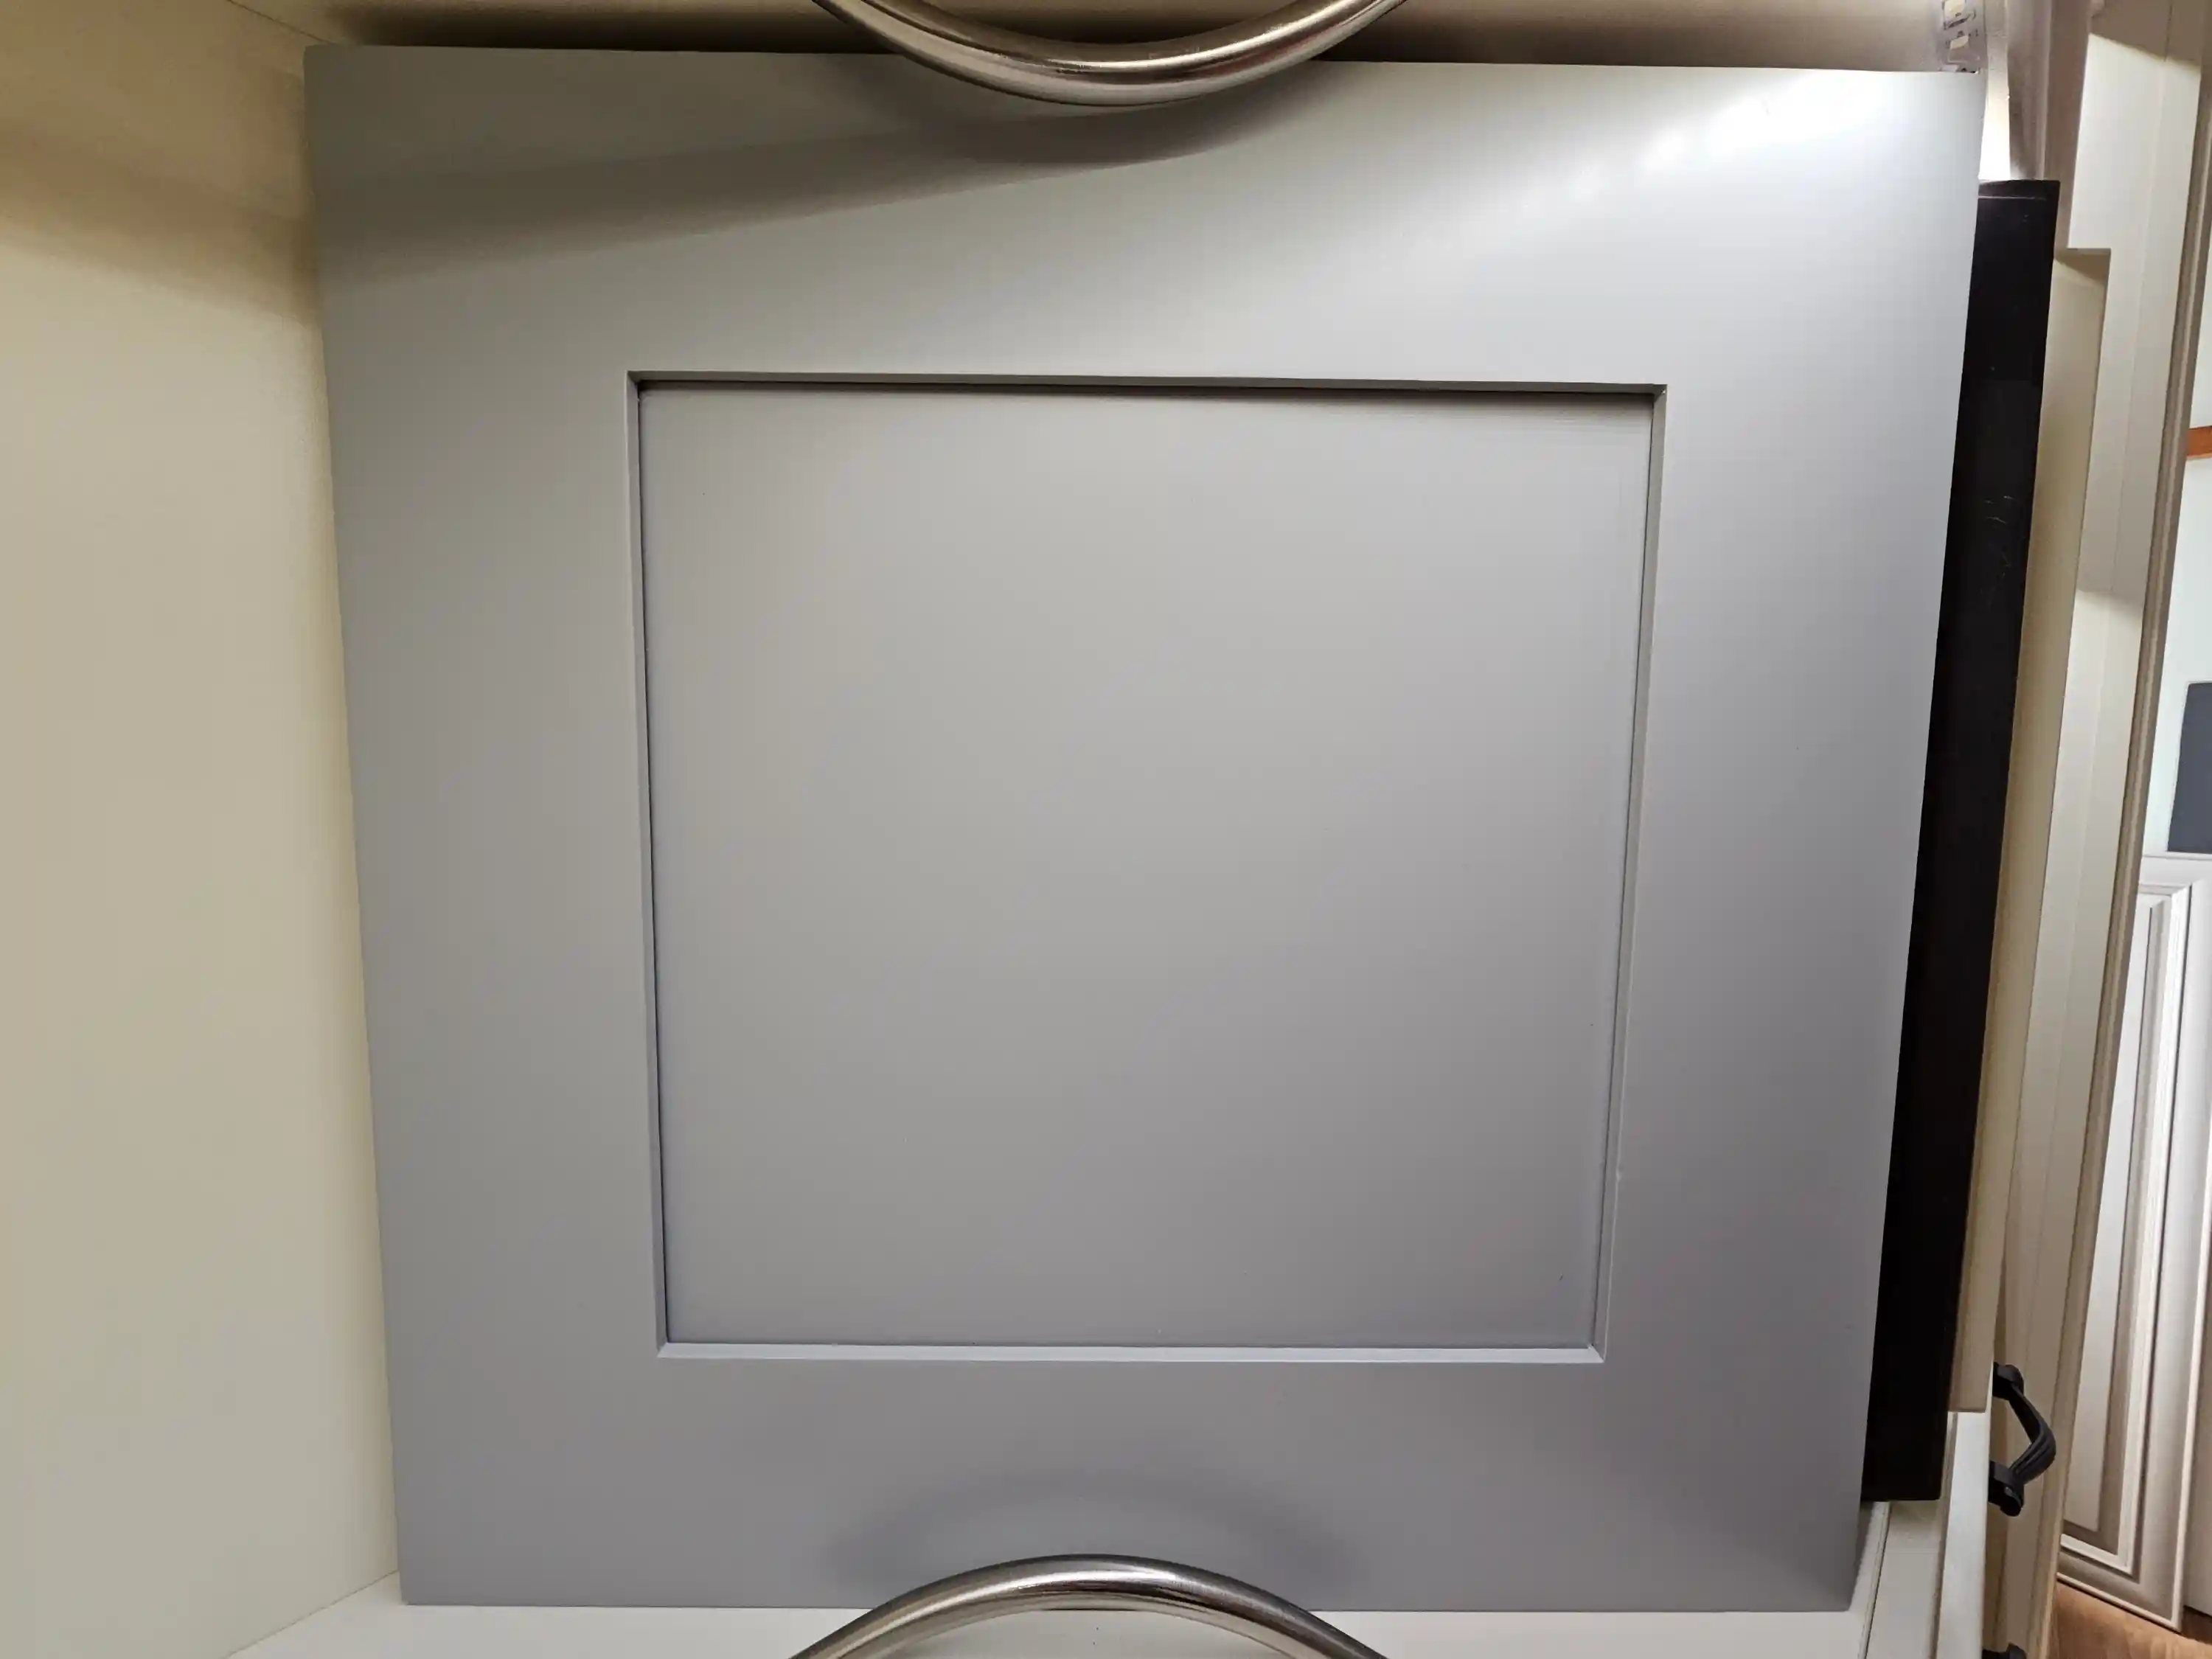 Light grey kitchen cabinet